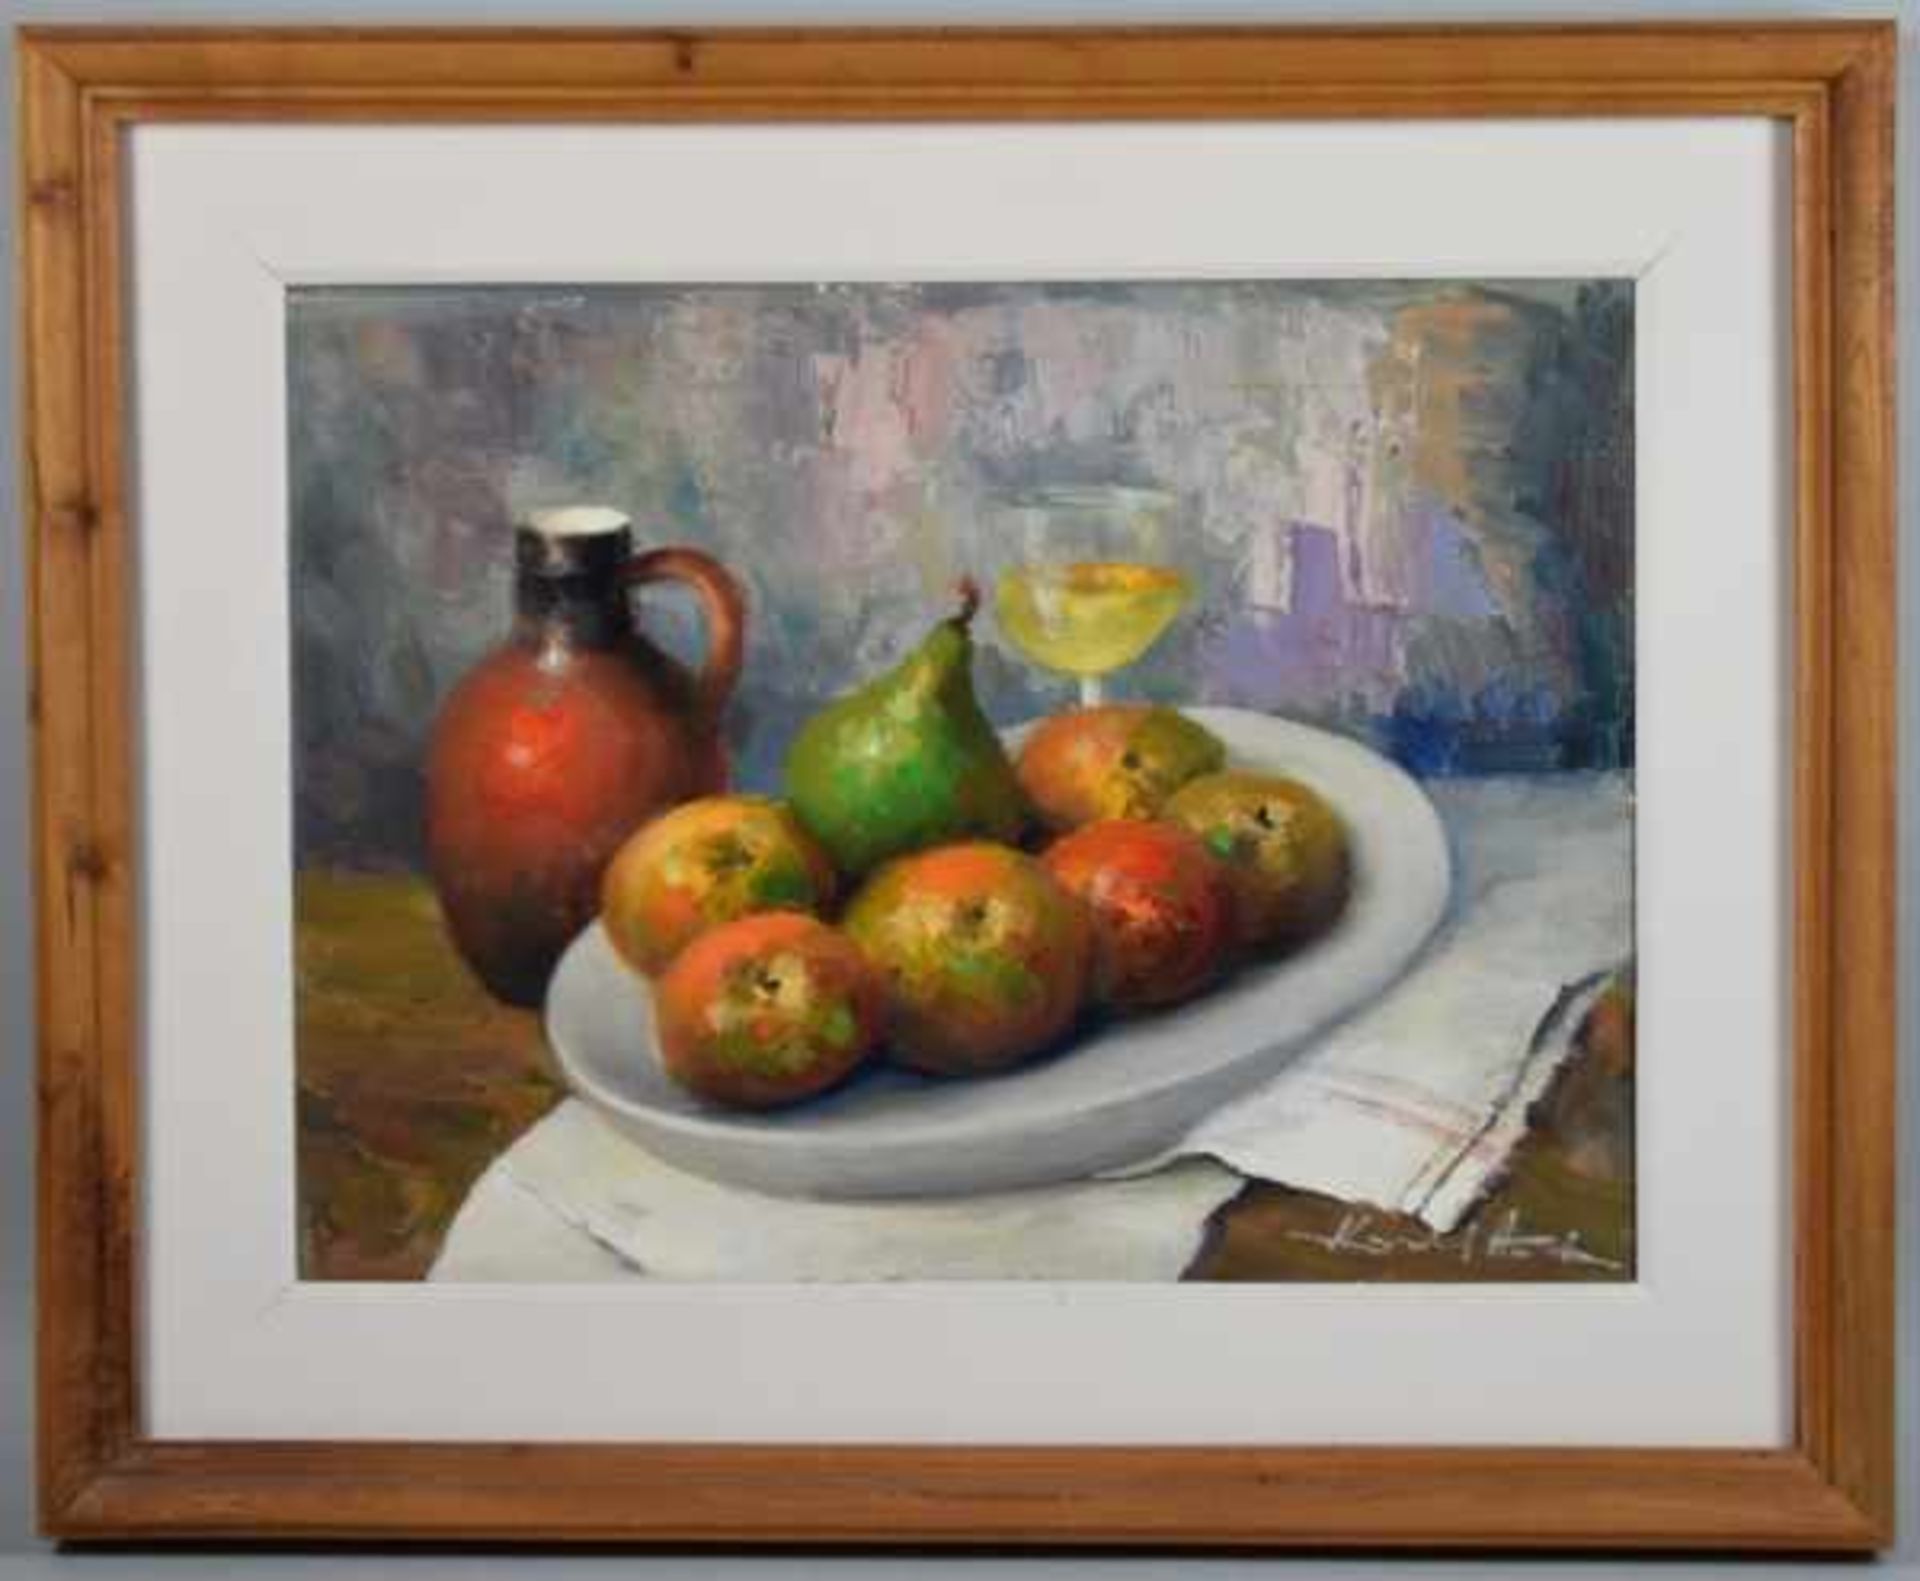 HODR Karel (1910 Prag - 2002 Konstanz) "Stilleben Äpfel", Äpfel und eine Birne auf weißem Teller mit - Image 2 of 4